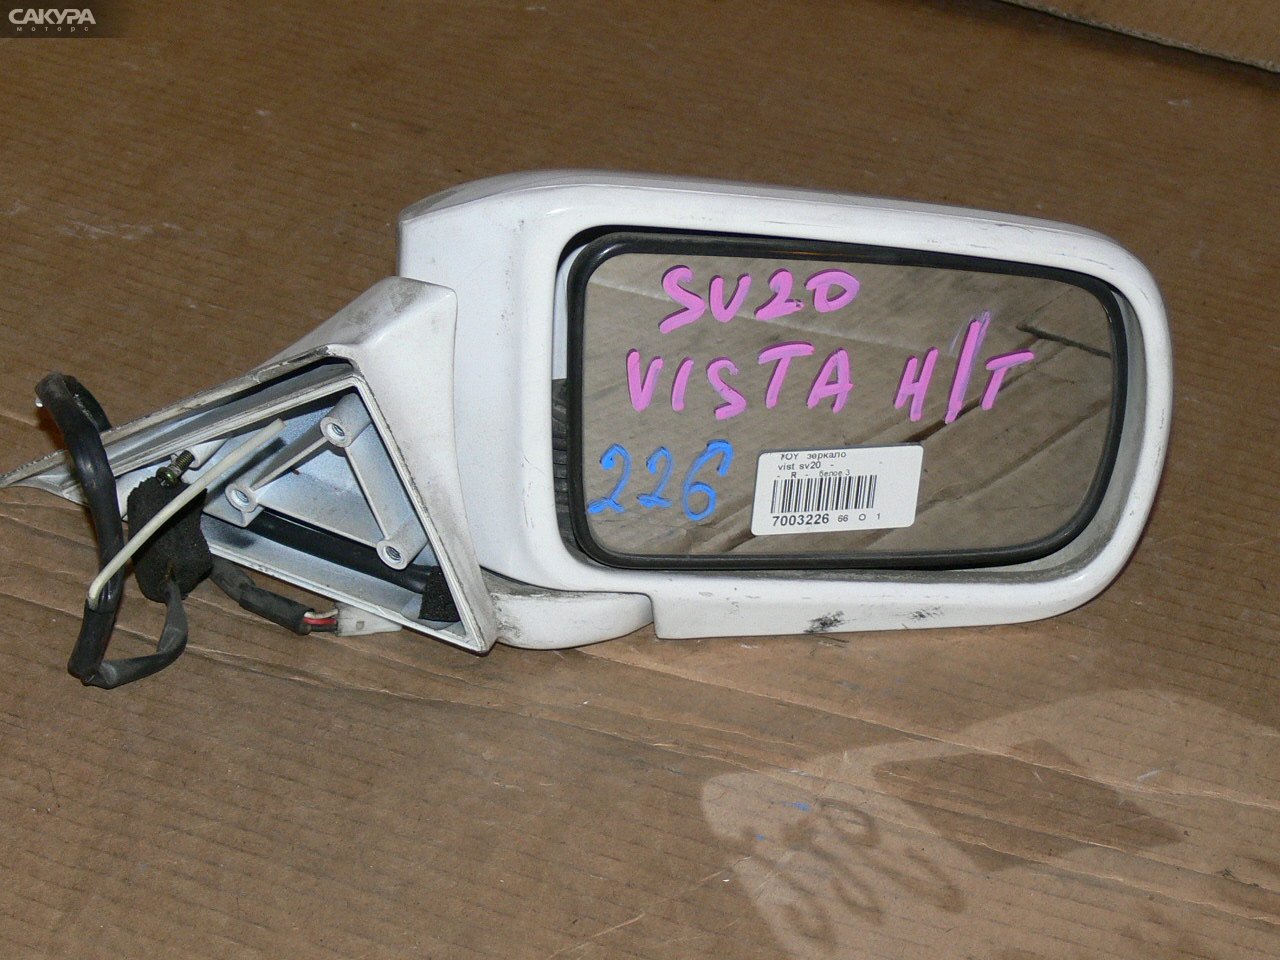 Зеркало боковое правое Toyota Vista SV20 1S-i: купить в Сакура Иркутск.